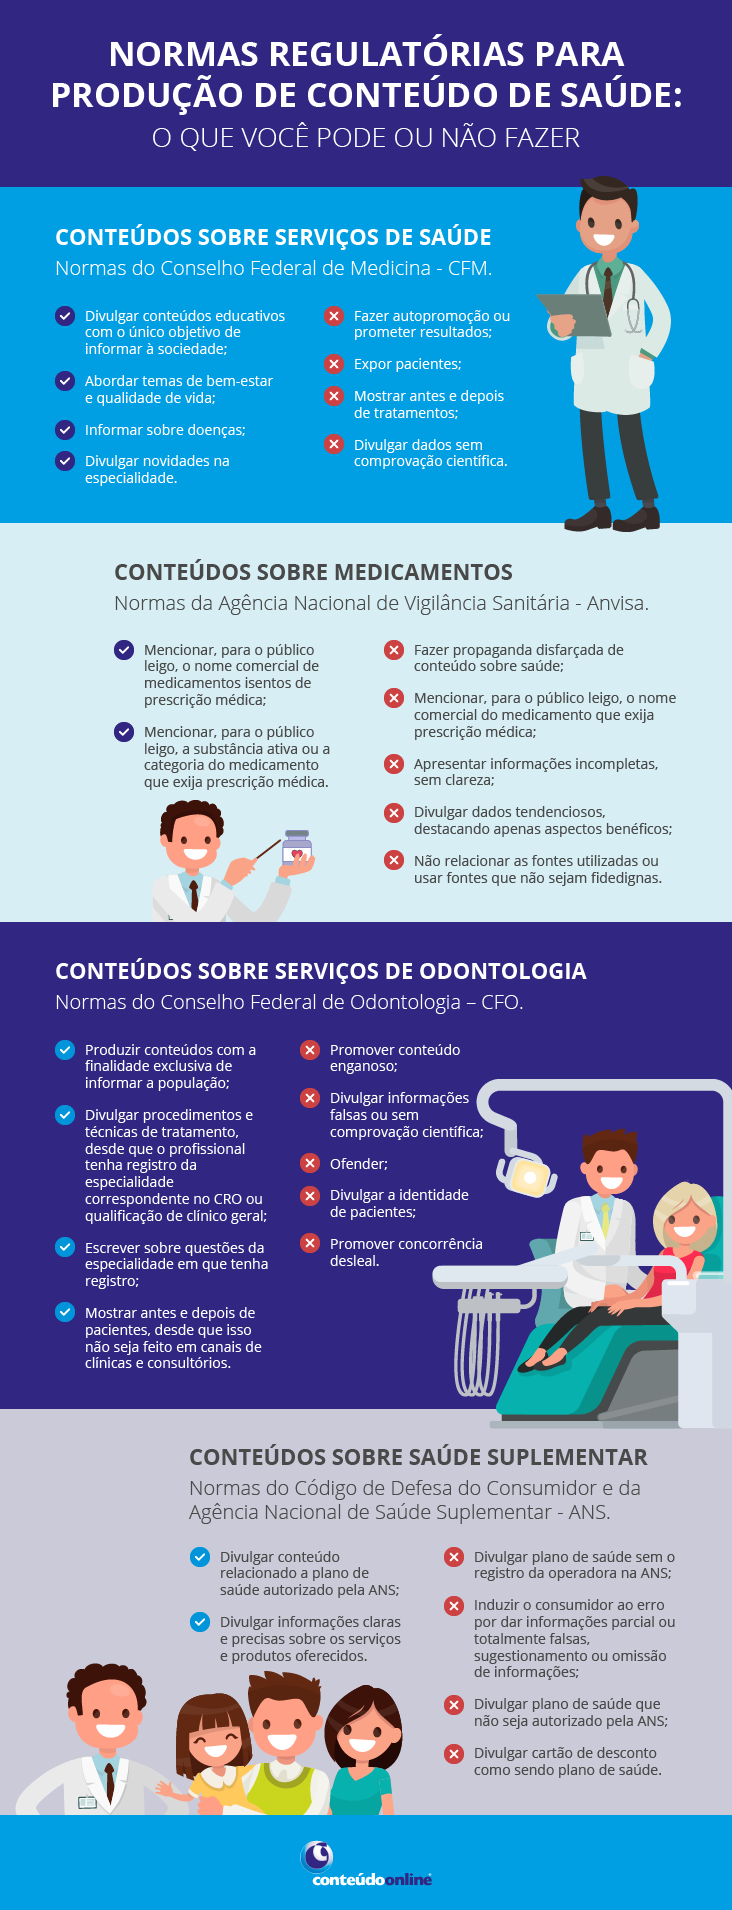 Infográfico sobre Normas regulatórias para produção de conteúdo de saúde